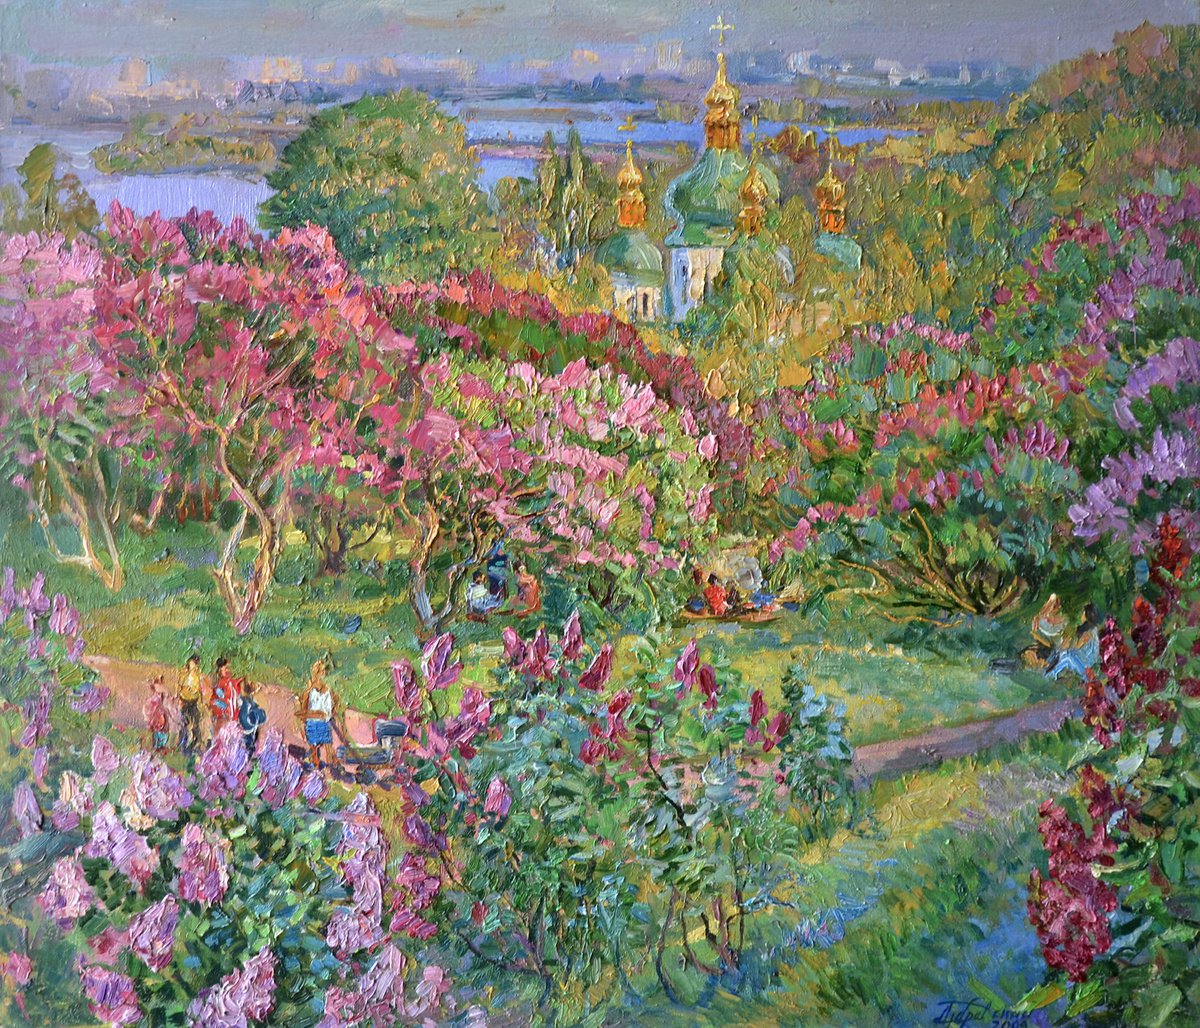 Spring Blossom of Lilac Trees by Aleksandr Dubrovskyy